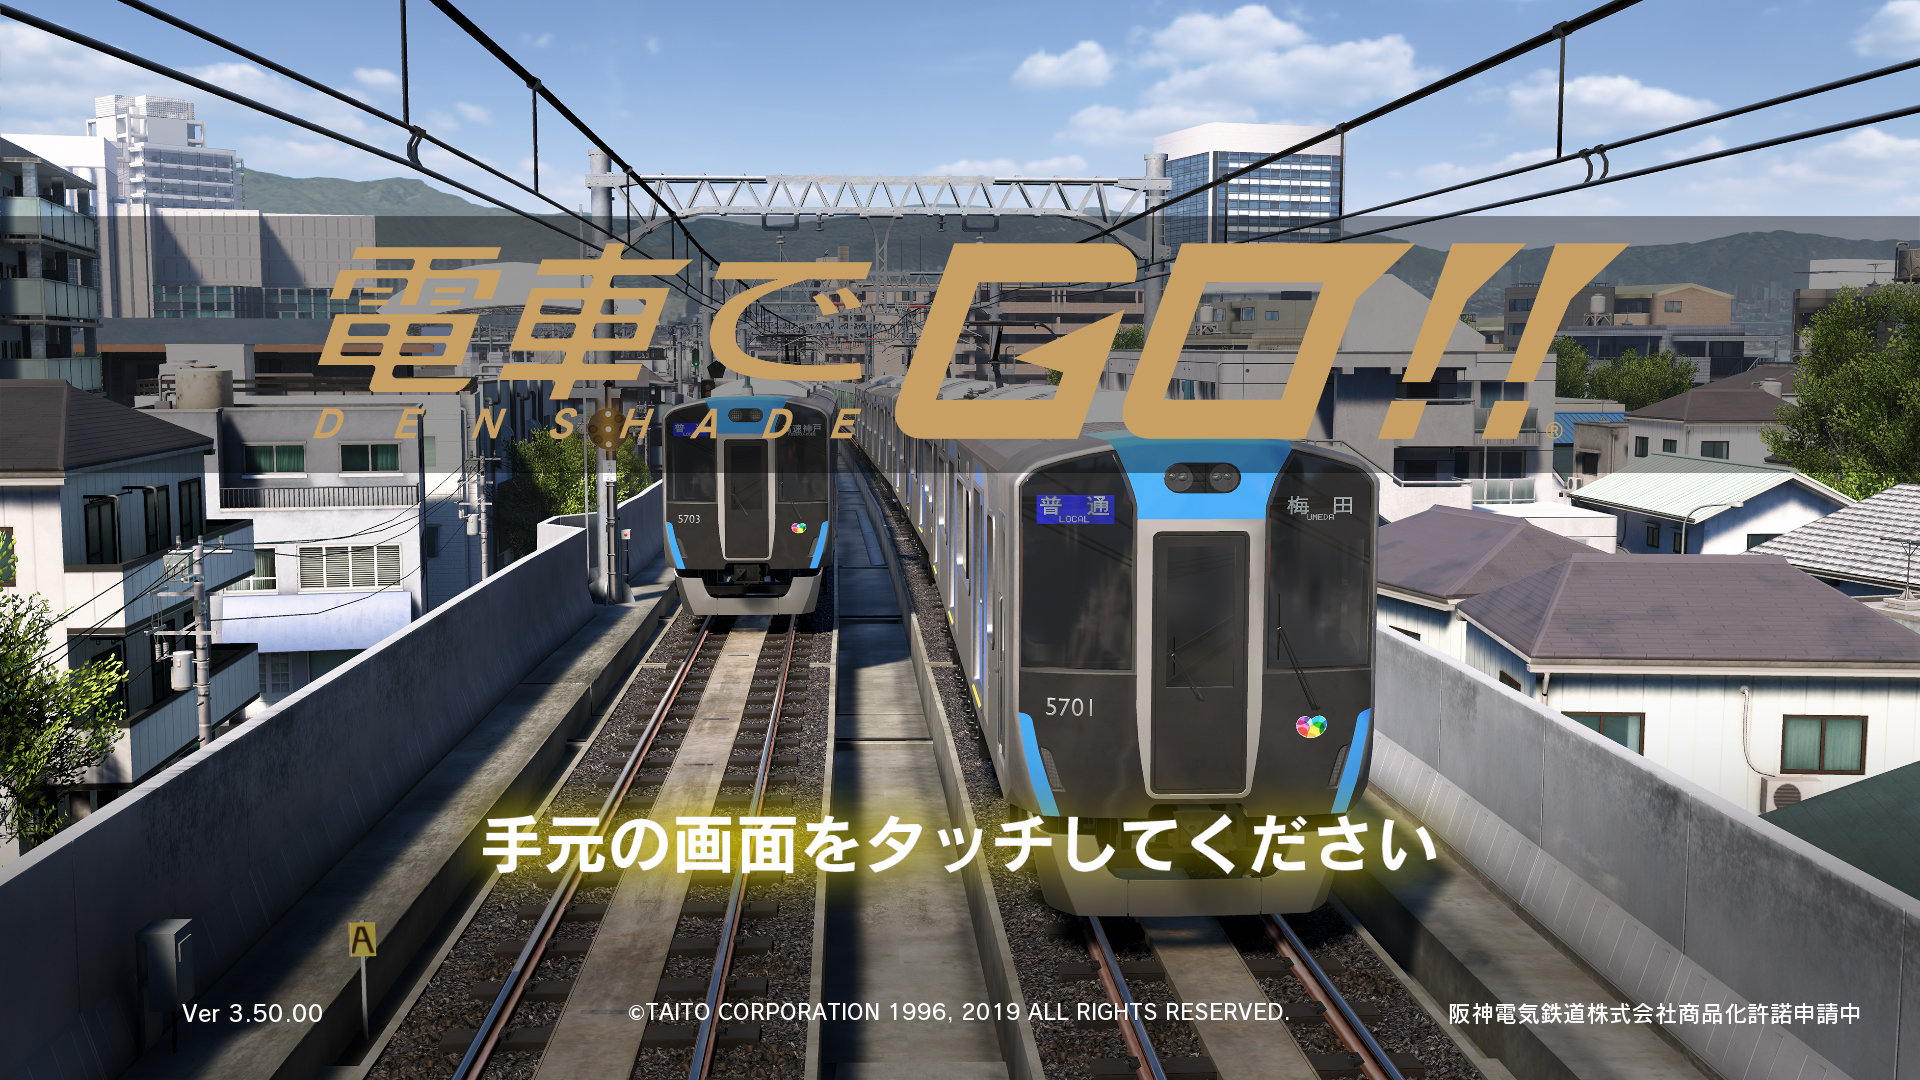 電車でgo にて初の私鉄 阪神電車 運行開始 尼崎 武庫川間を運転可能に Game Watch